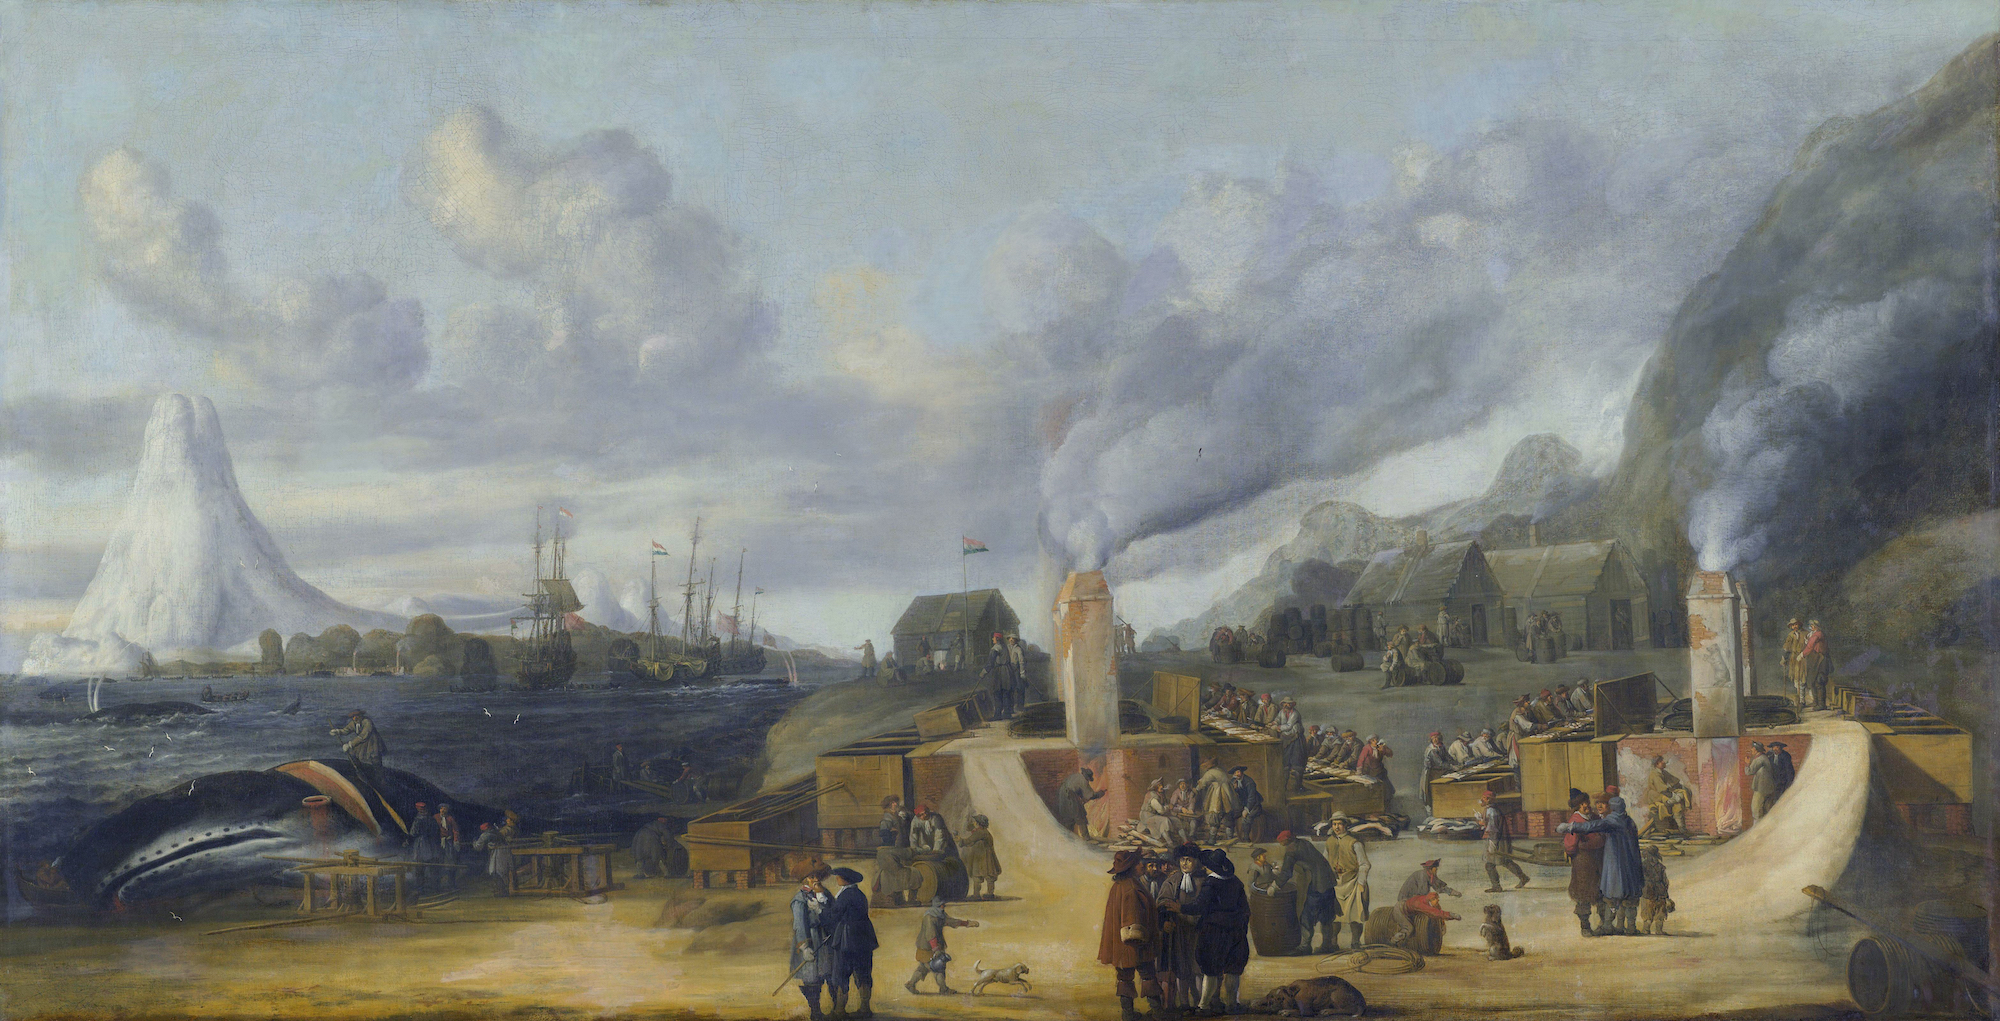 Fabryka oleju wielorybiego Noordsche Compagnie w Smeerenburgu na wyspie Amsterdam  by Cornelis de Man - 1639 - 108 x 205 cm 